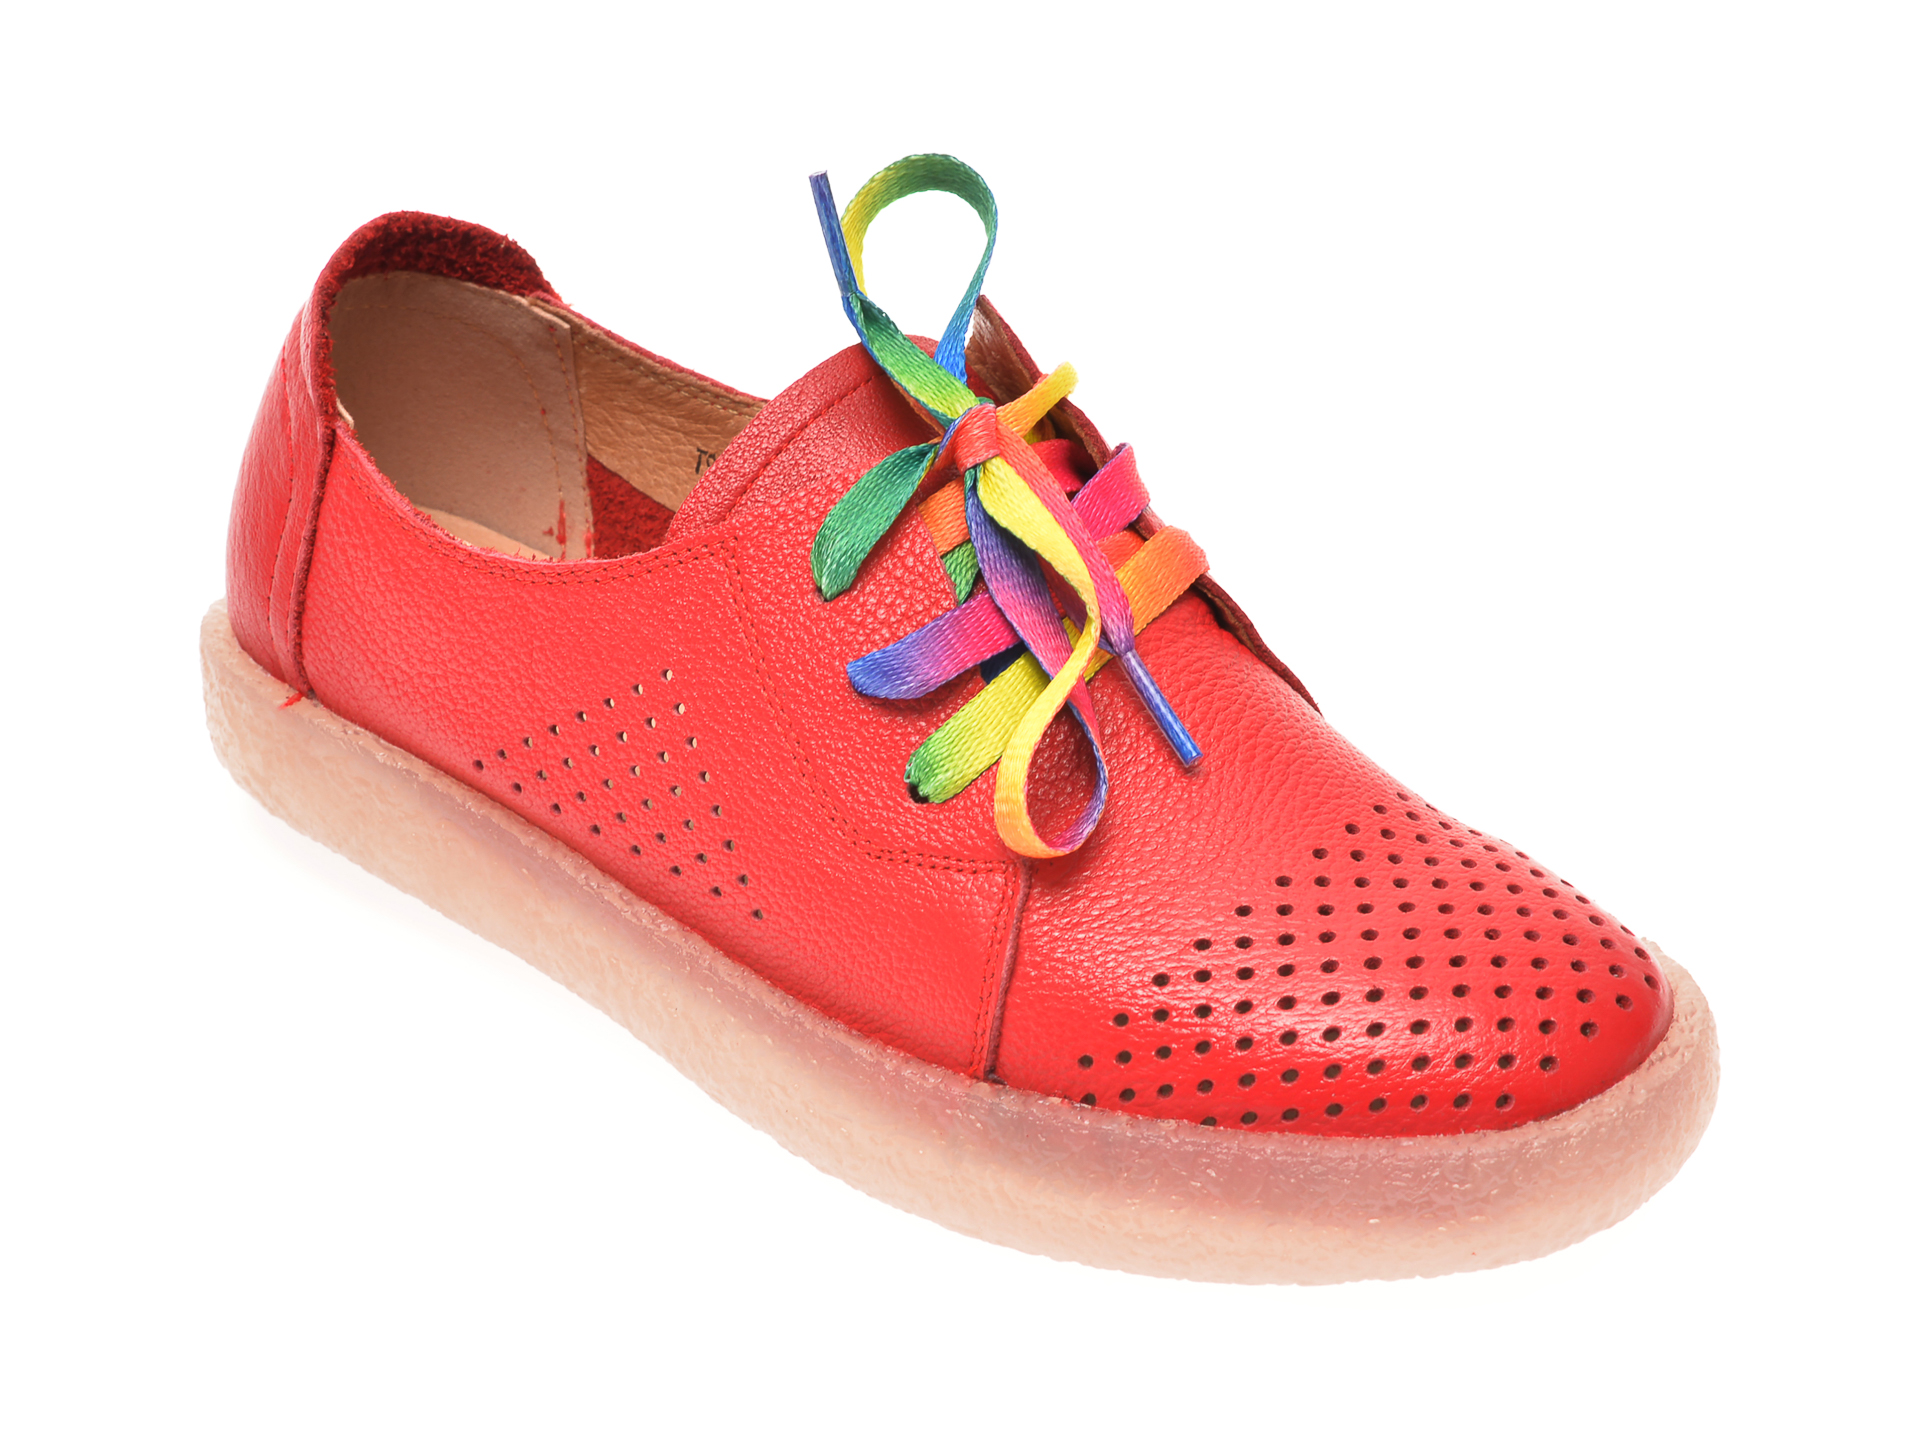 Pantofi PASS COLLECTION rosii, T9019, din piele naturala PASS COLLECTION imagine reduceri